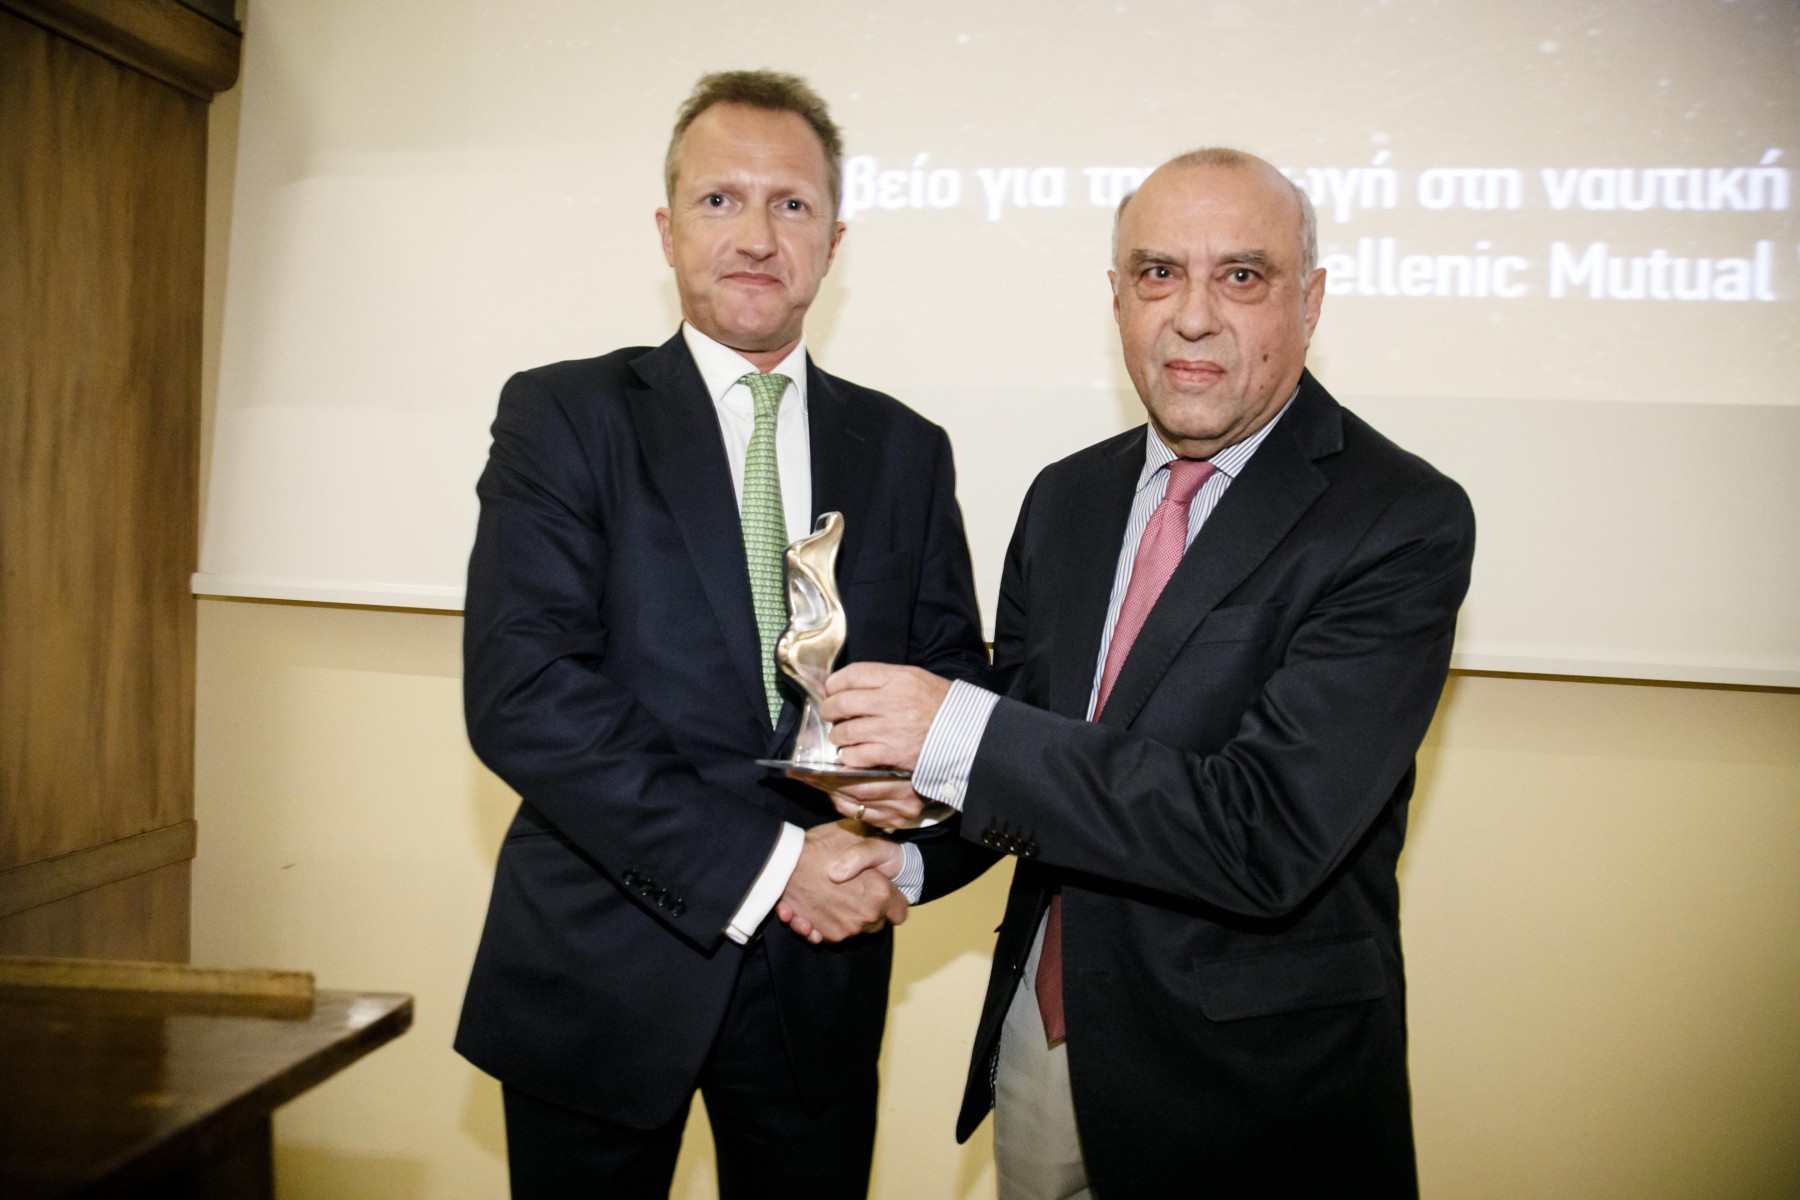 Ο κ. Μιχαήλ Πατέρας, αντιπρόεδρος του Hellenic Mutual War Risks Association παραλαμβάνει το βραβείο από τον κ. Tim Childe, Head of International & Jersey Office της Quilter Cheviot